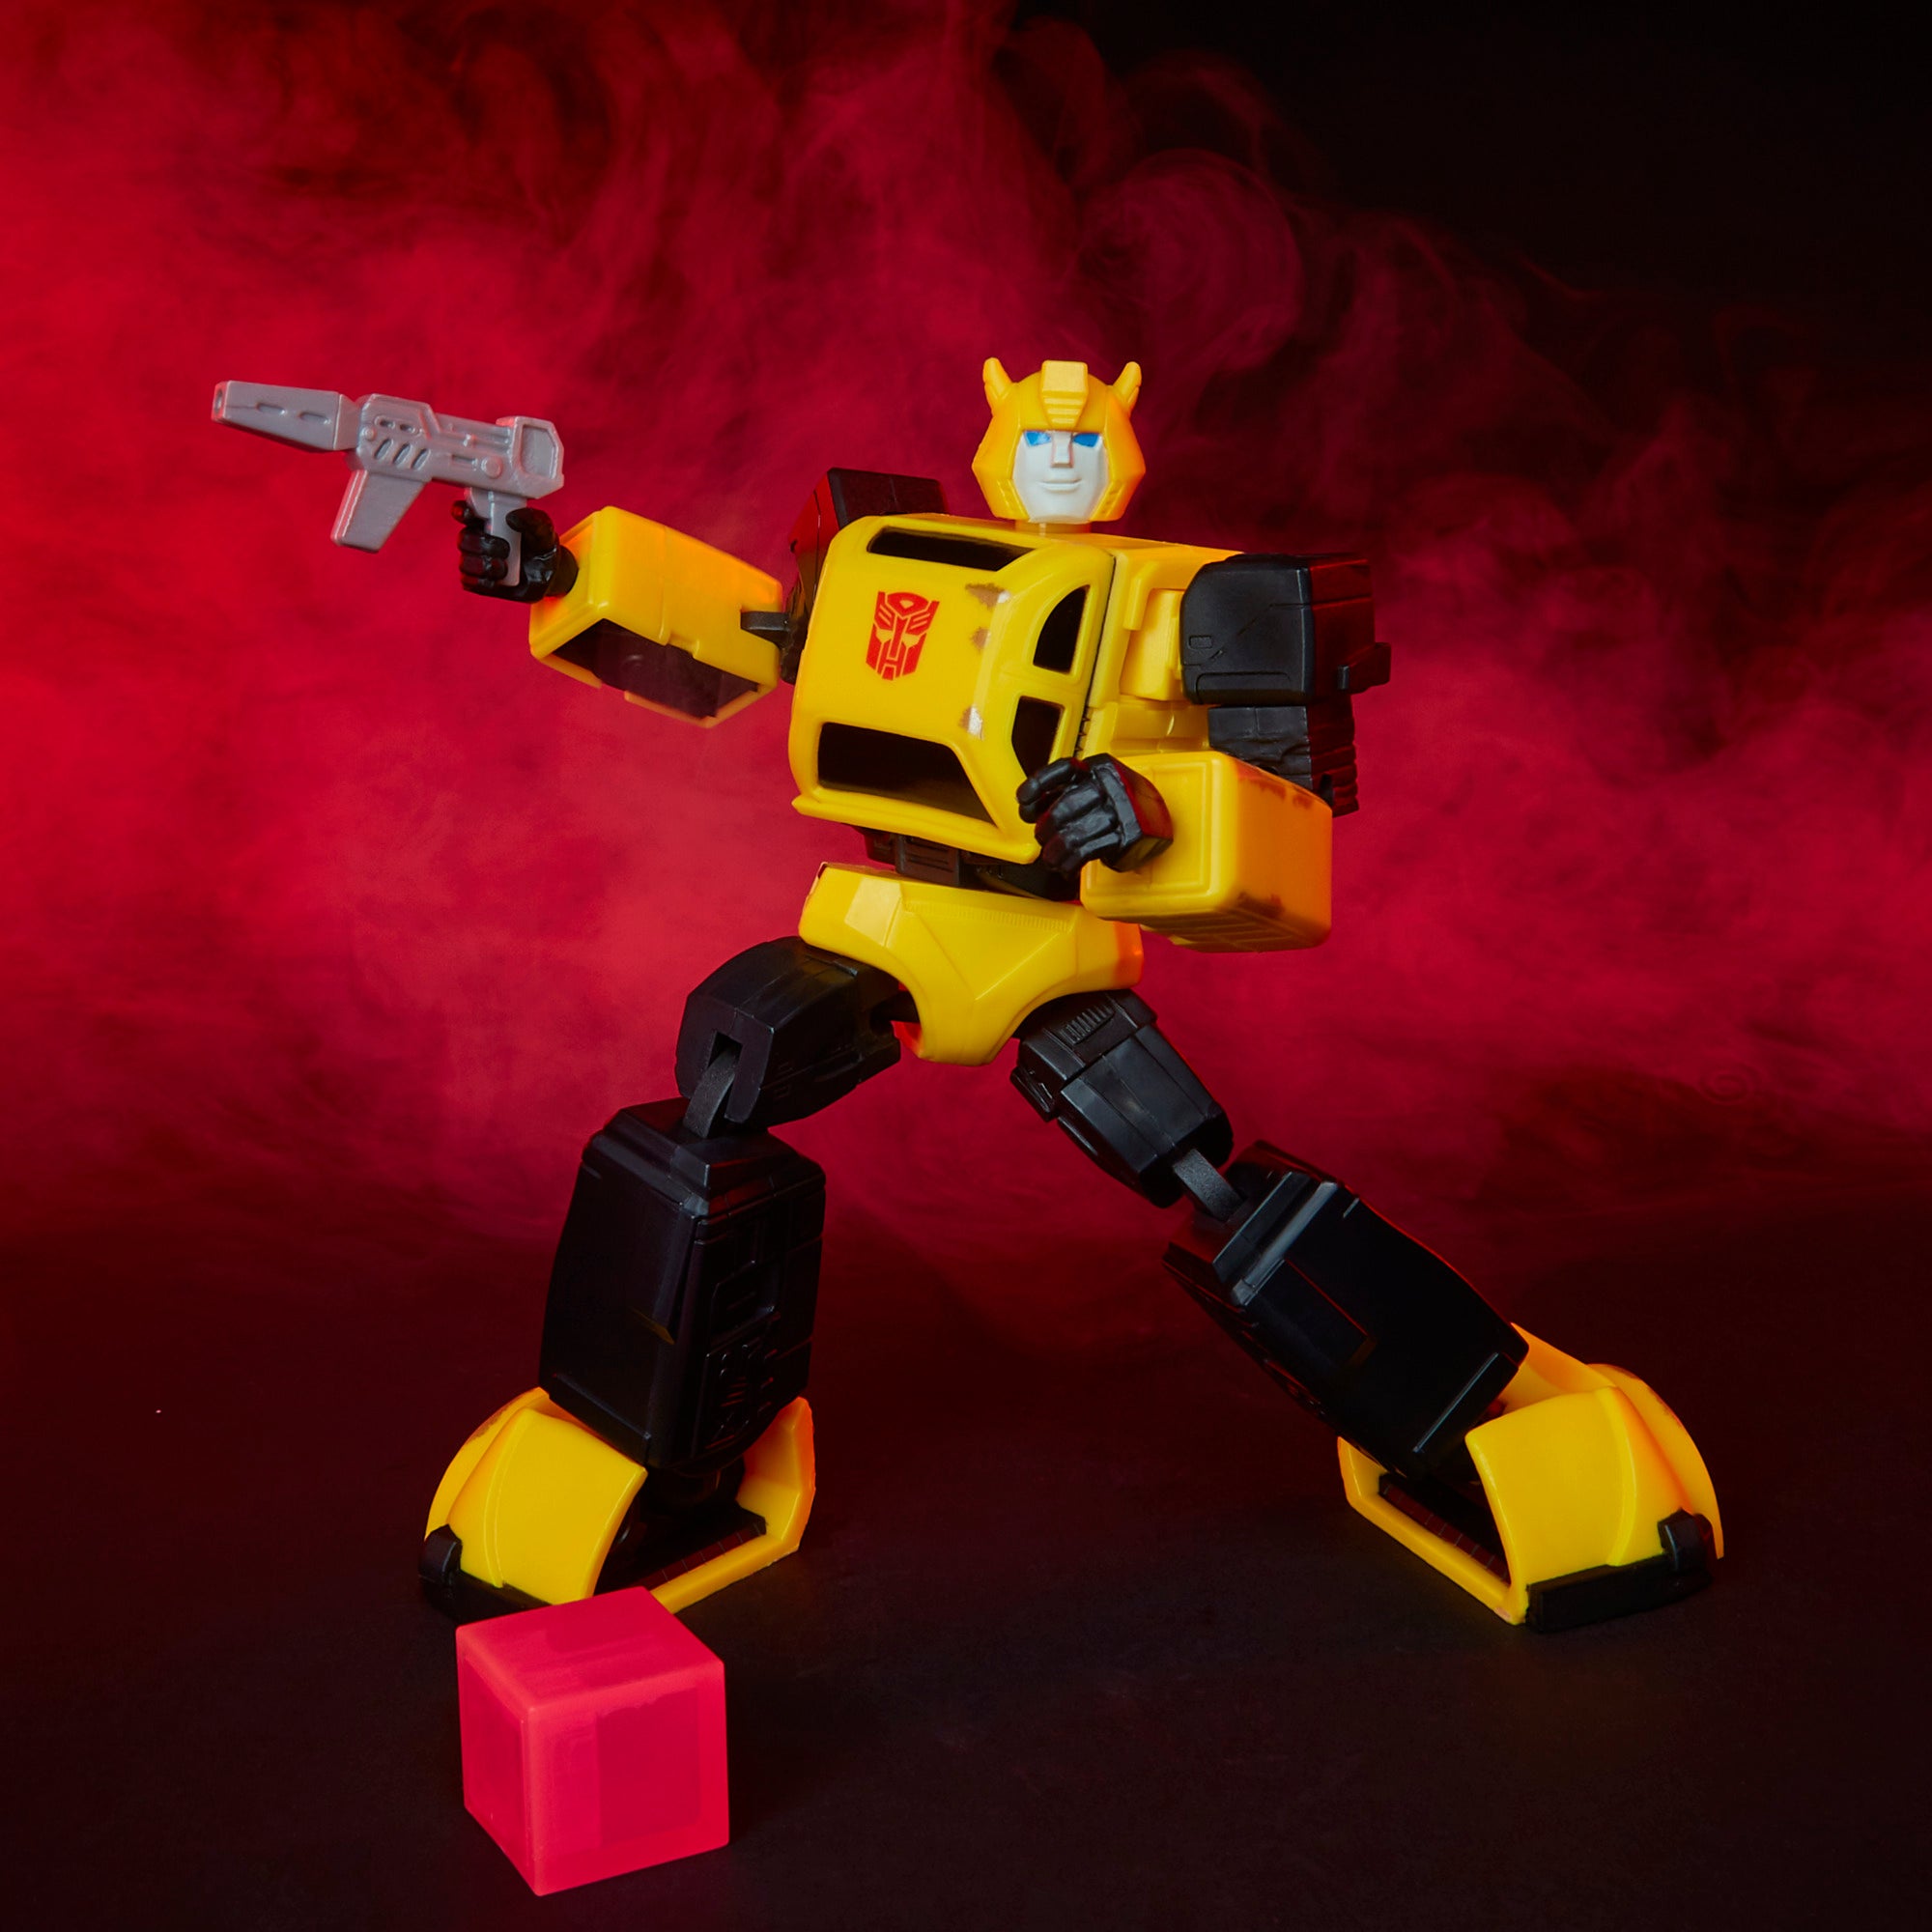 Transformers X Quiccs: Bumblebee